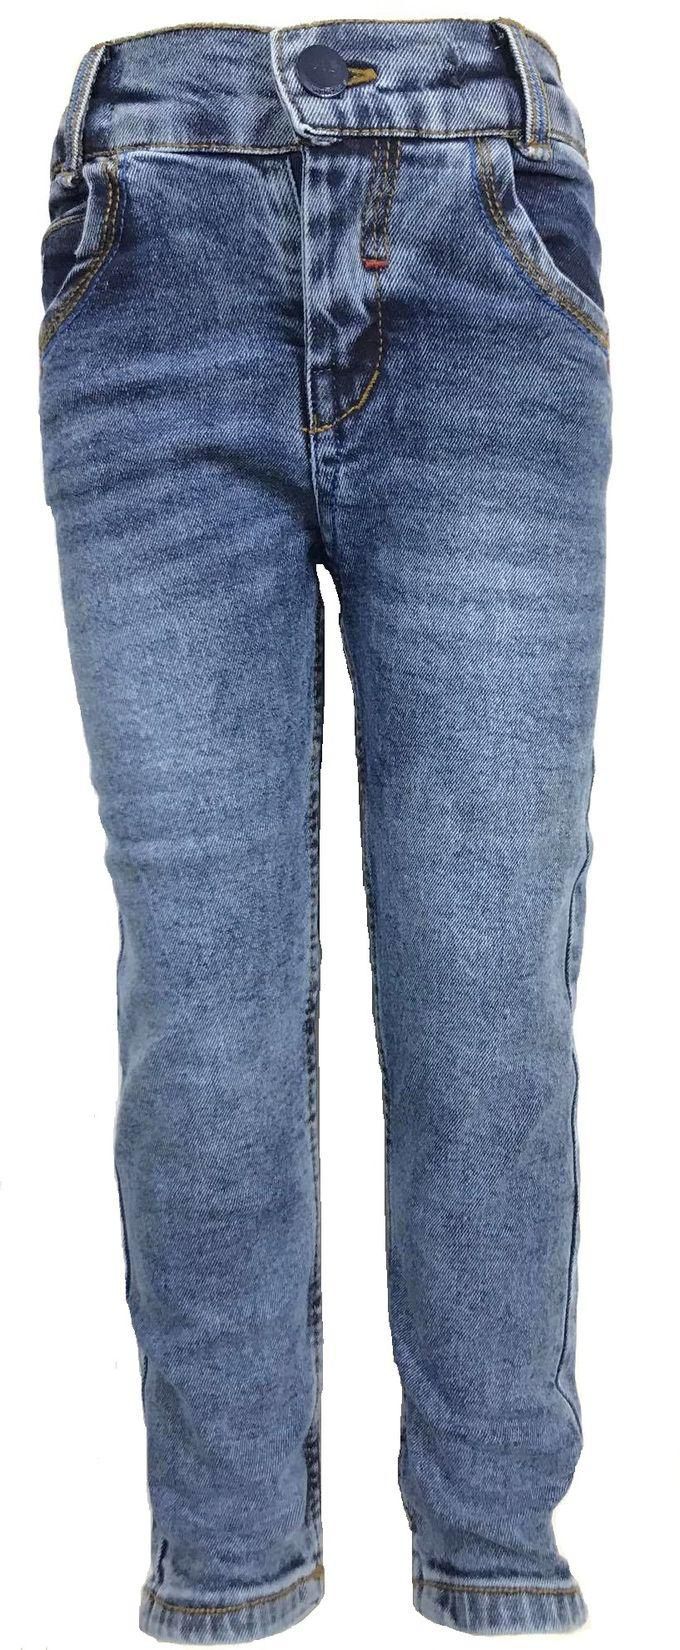 Boys Jeans Pants - Slim Fit